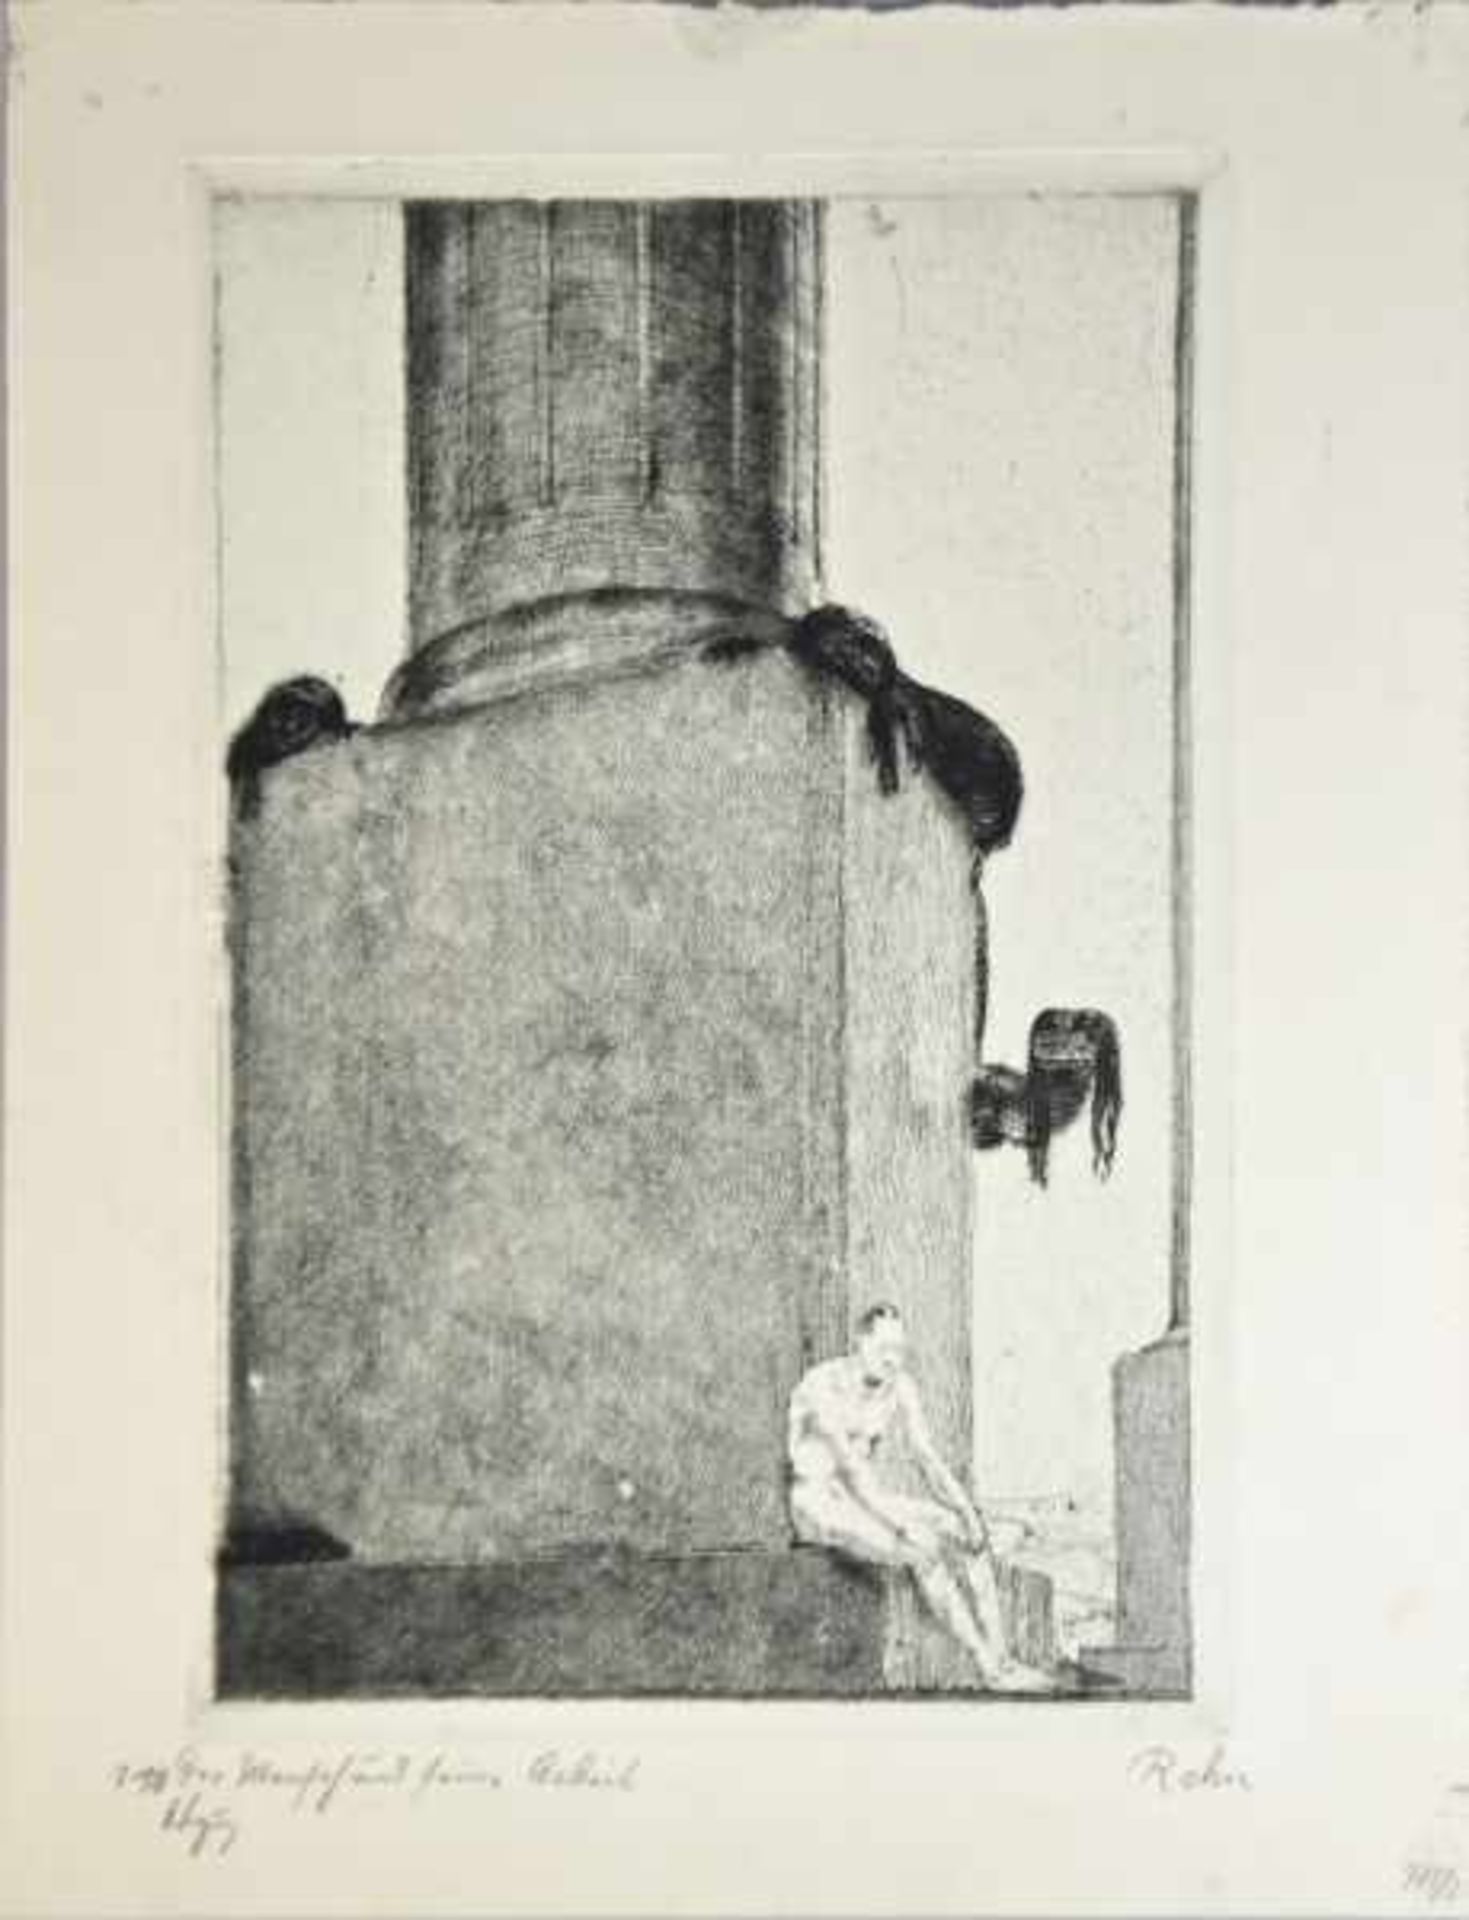 REHN Walter Richard (1884-1951 Dresden) "Der Mensch und seine Arbeit", Mann sitzt nachdenklich auf - Bild 2 aus 3